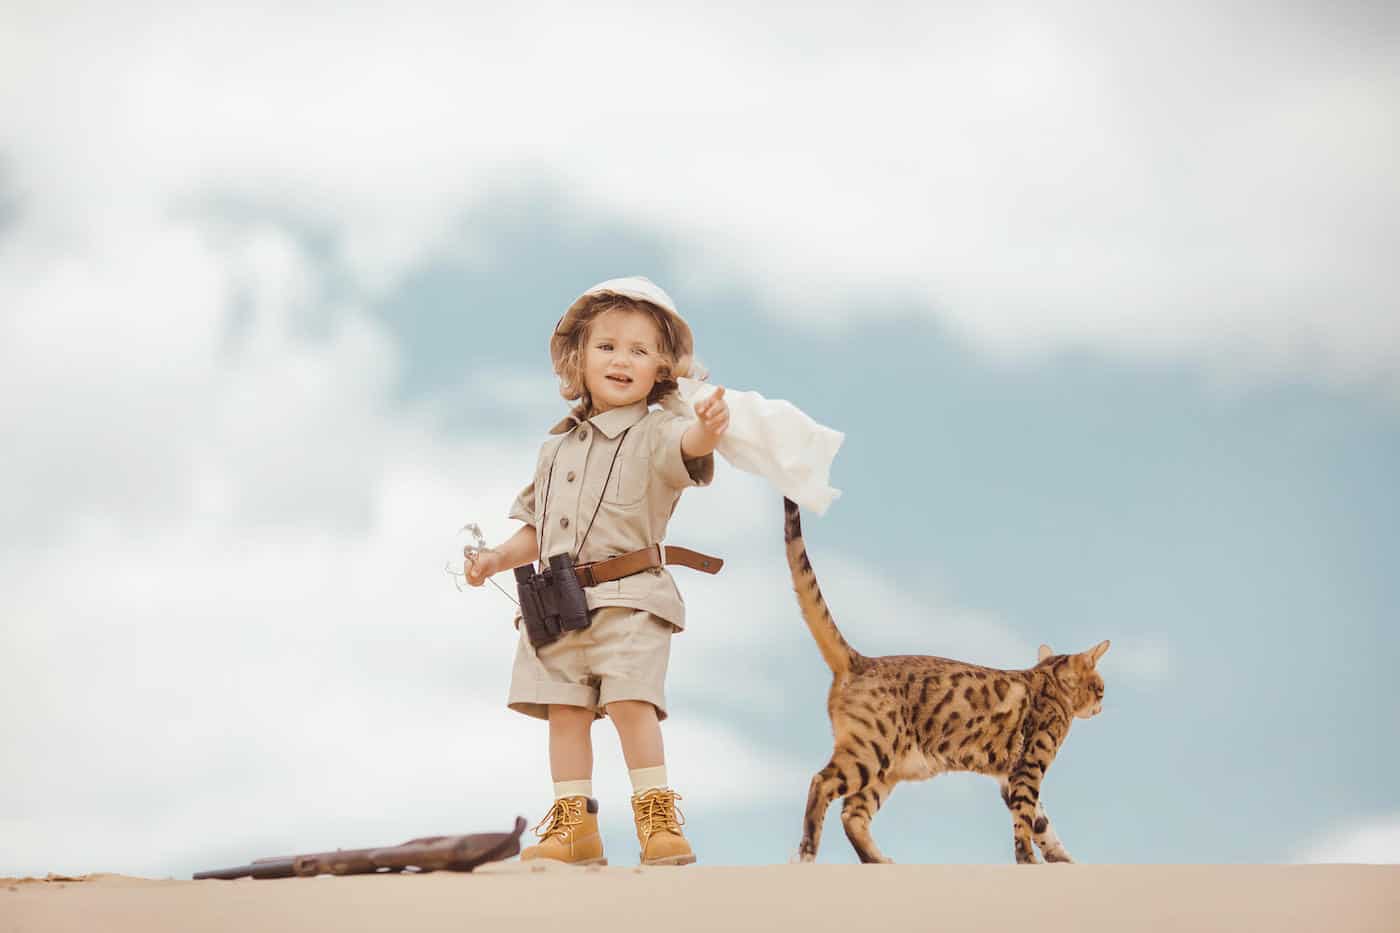 little explorer girl in exotic desert